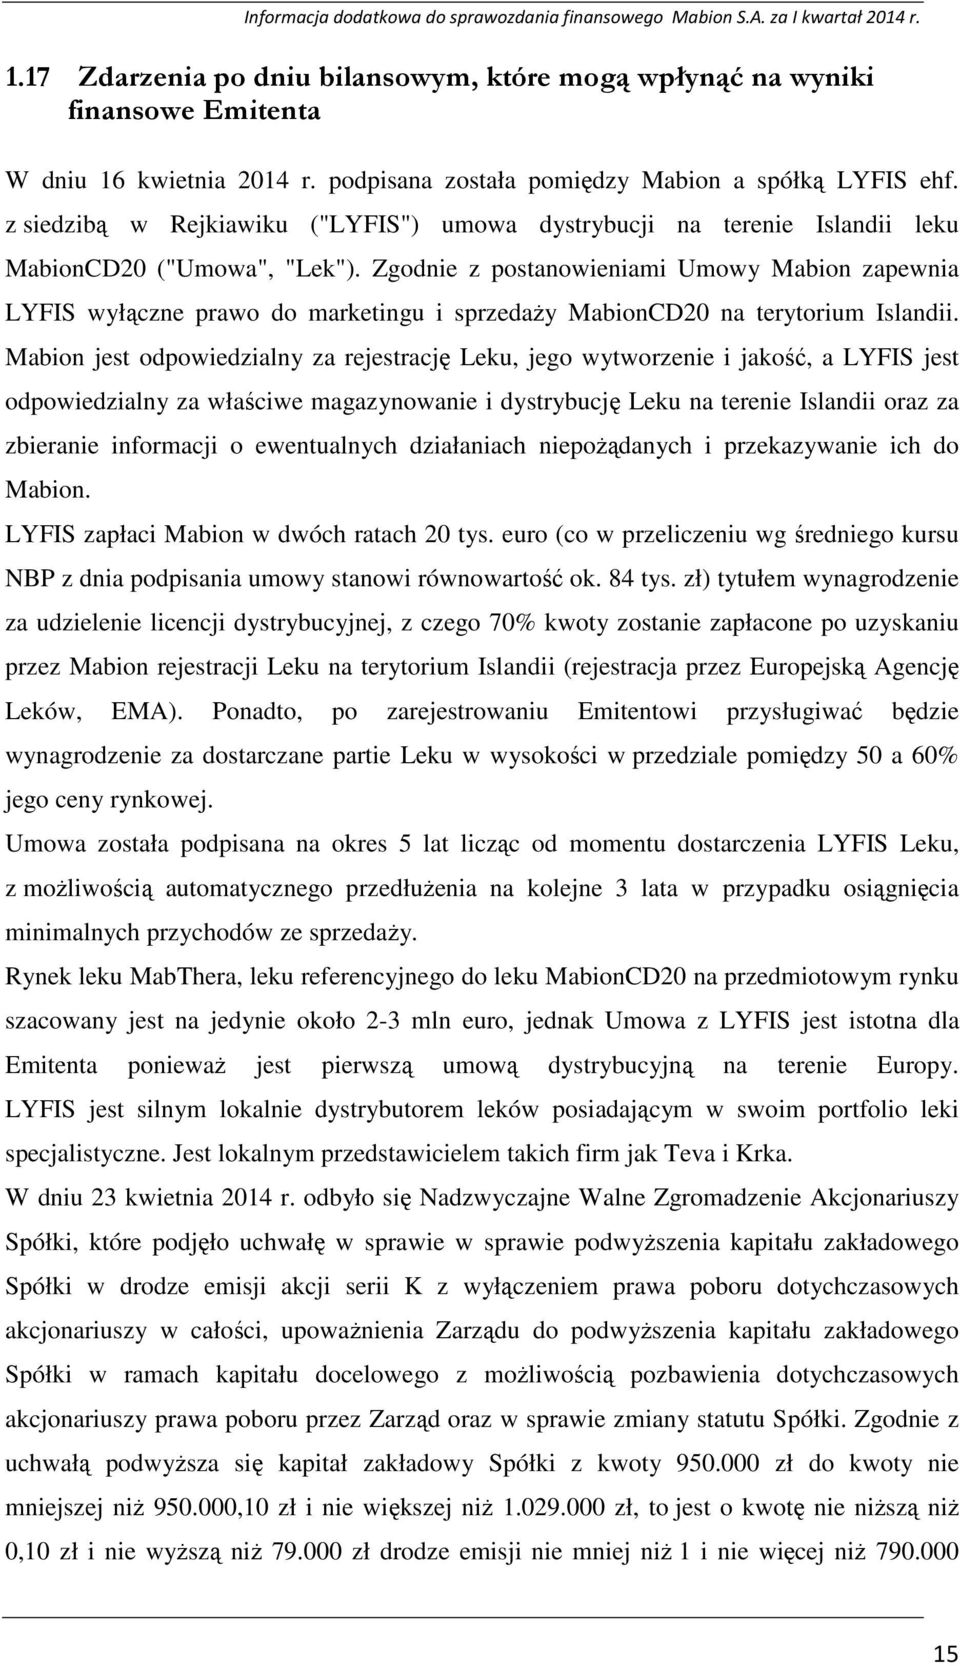 Zgodnie z postanowieniami Umowy Mabion zapewnia LYFIS wyłączne prawo do marketingu i sprzedaŝy MabionCD20 na terytorium Islandii.